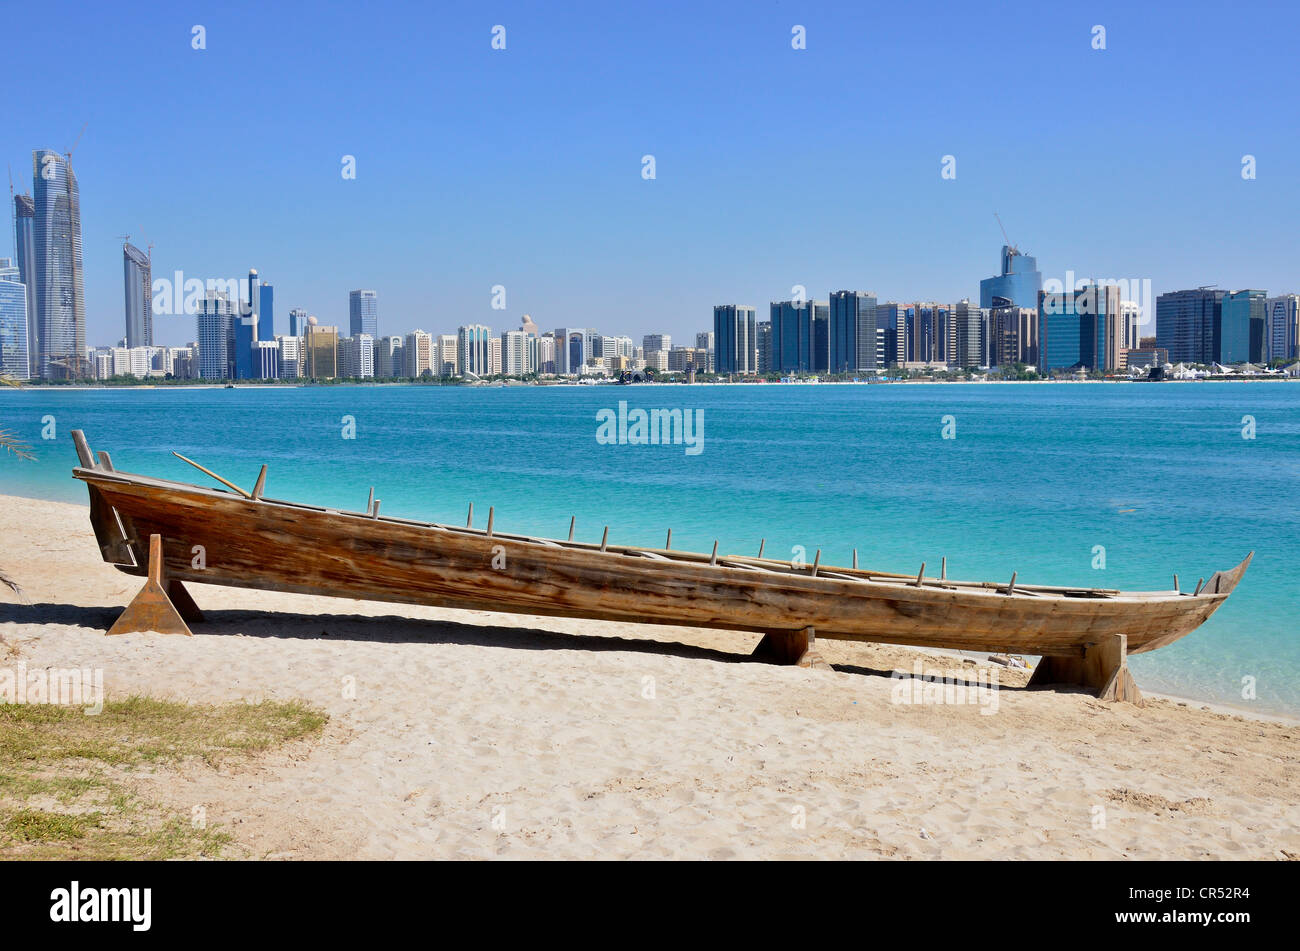 La barca di legno presso il Villaggio del Patrimonio Culturale, di fronte alla Abu Dhabi skyline, Emirati arabi uniti, Penisola Arabica, Asia Foto Stock